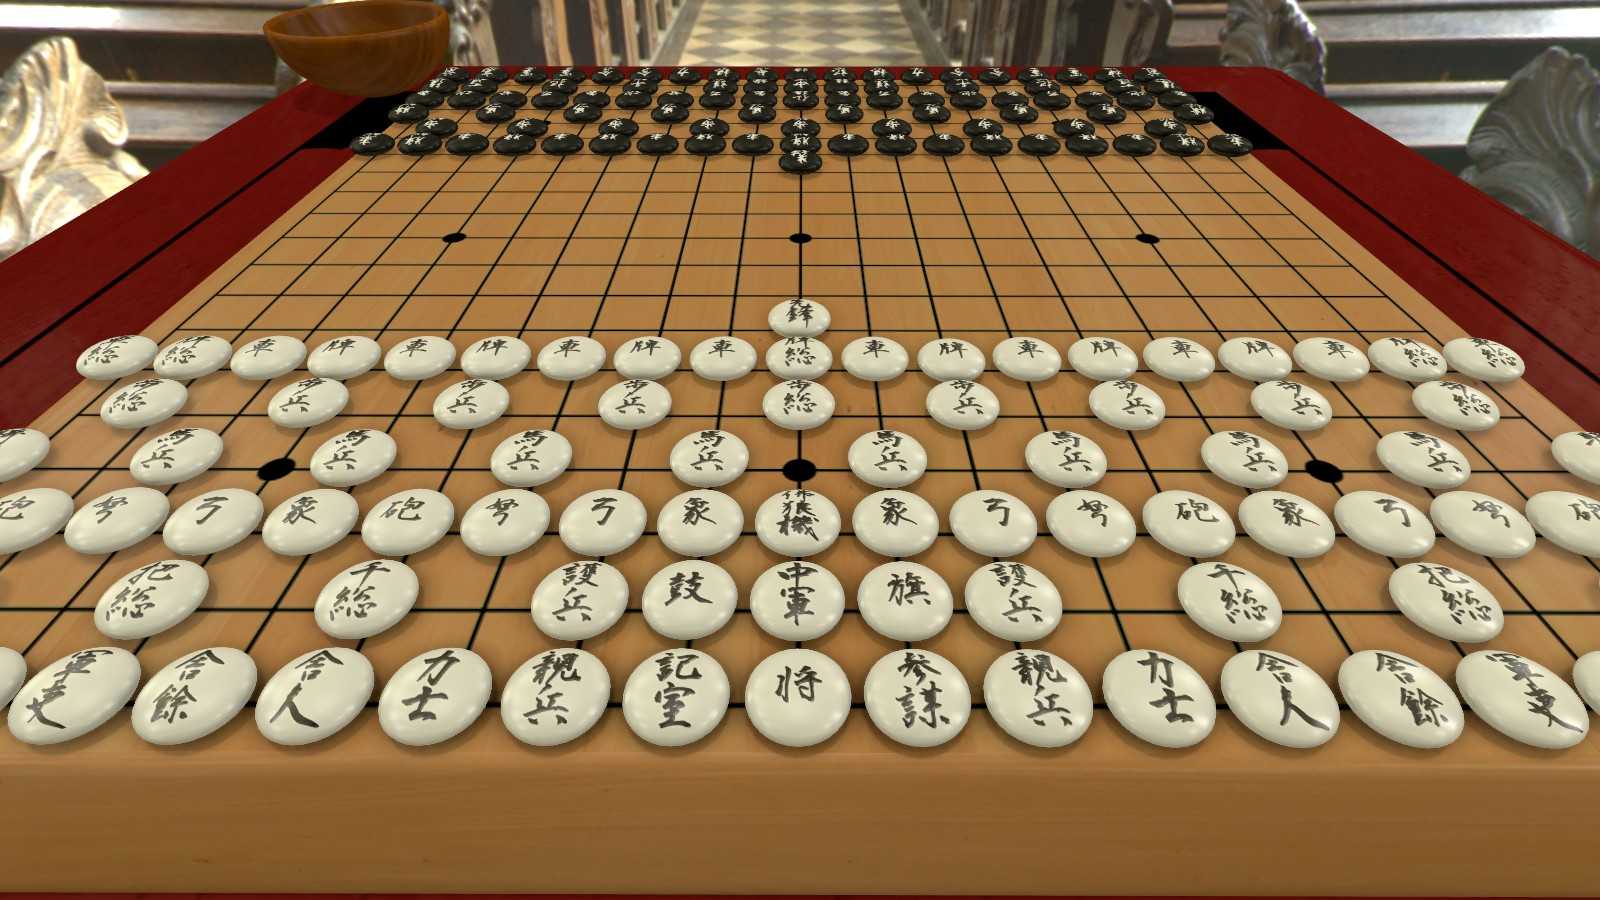 Игры японские правила. Японские Шоги японские шахматы. Шоги игра. Японская игра сёги. Японская настольная игра Шоги.